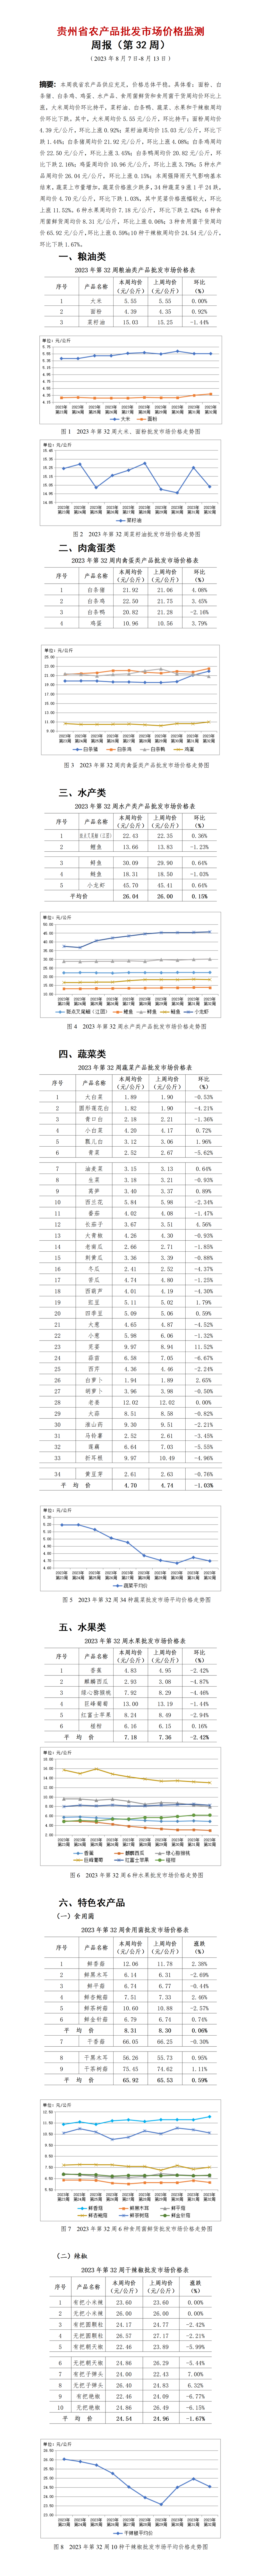 2023年32周-贵州省农产品批发市场价格监测周报-定_01